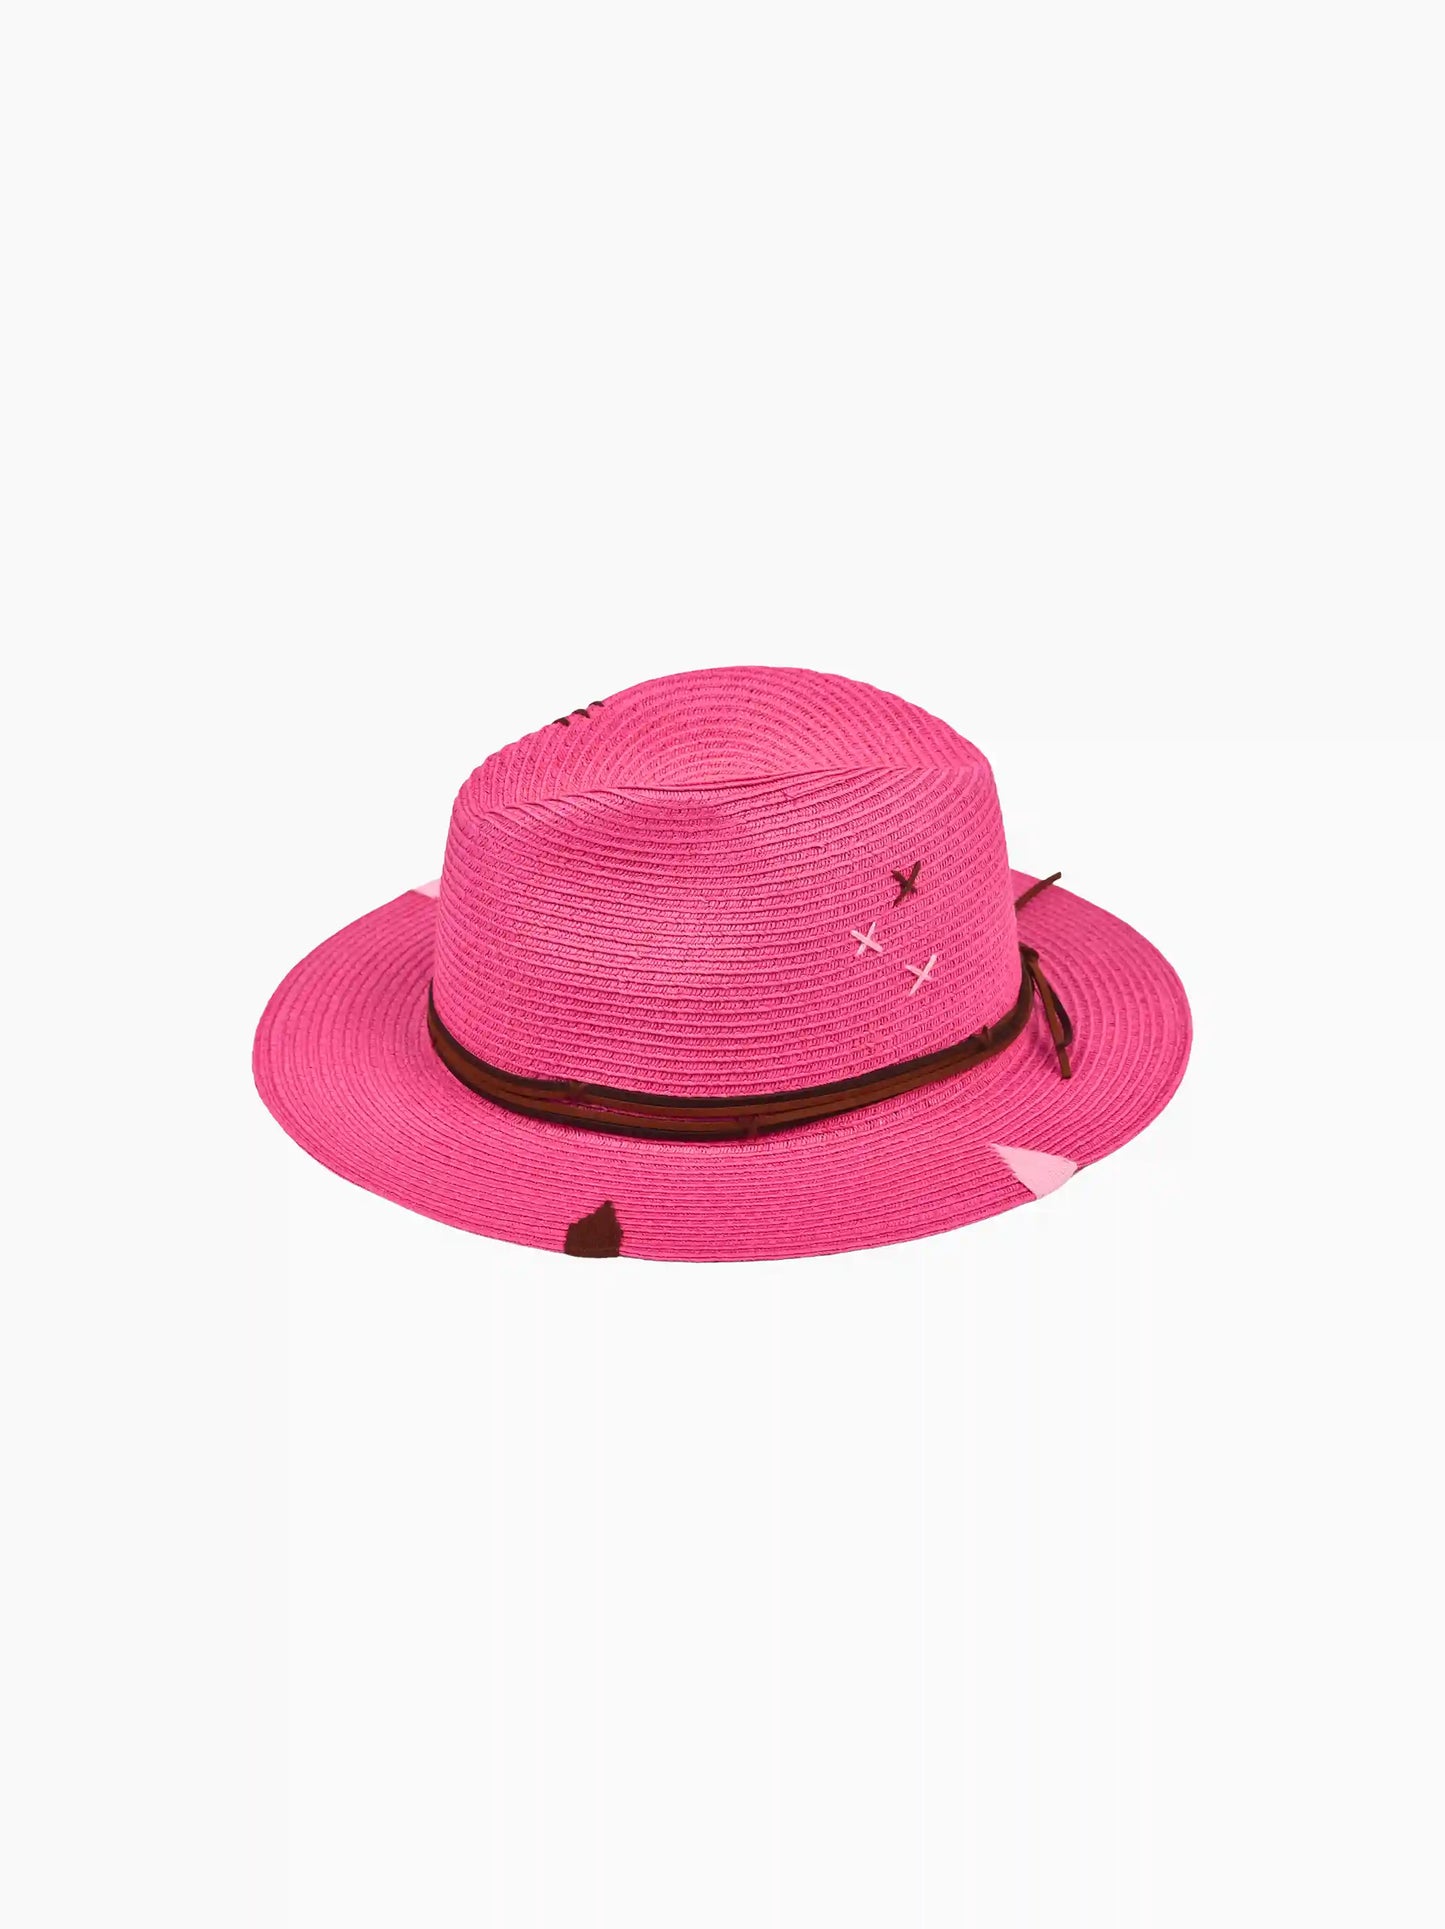 Hakuna Matata Straw Hat